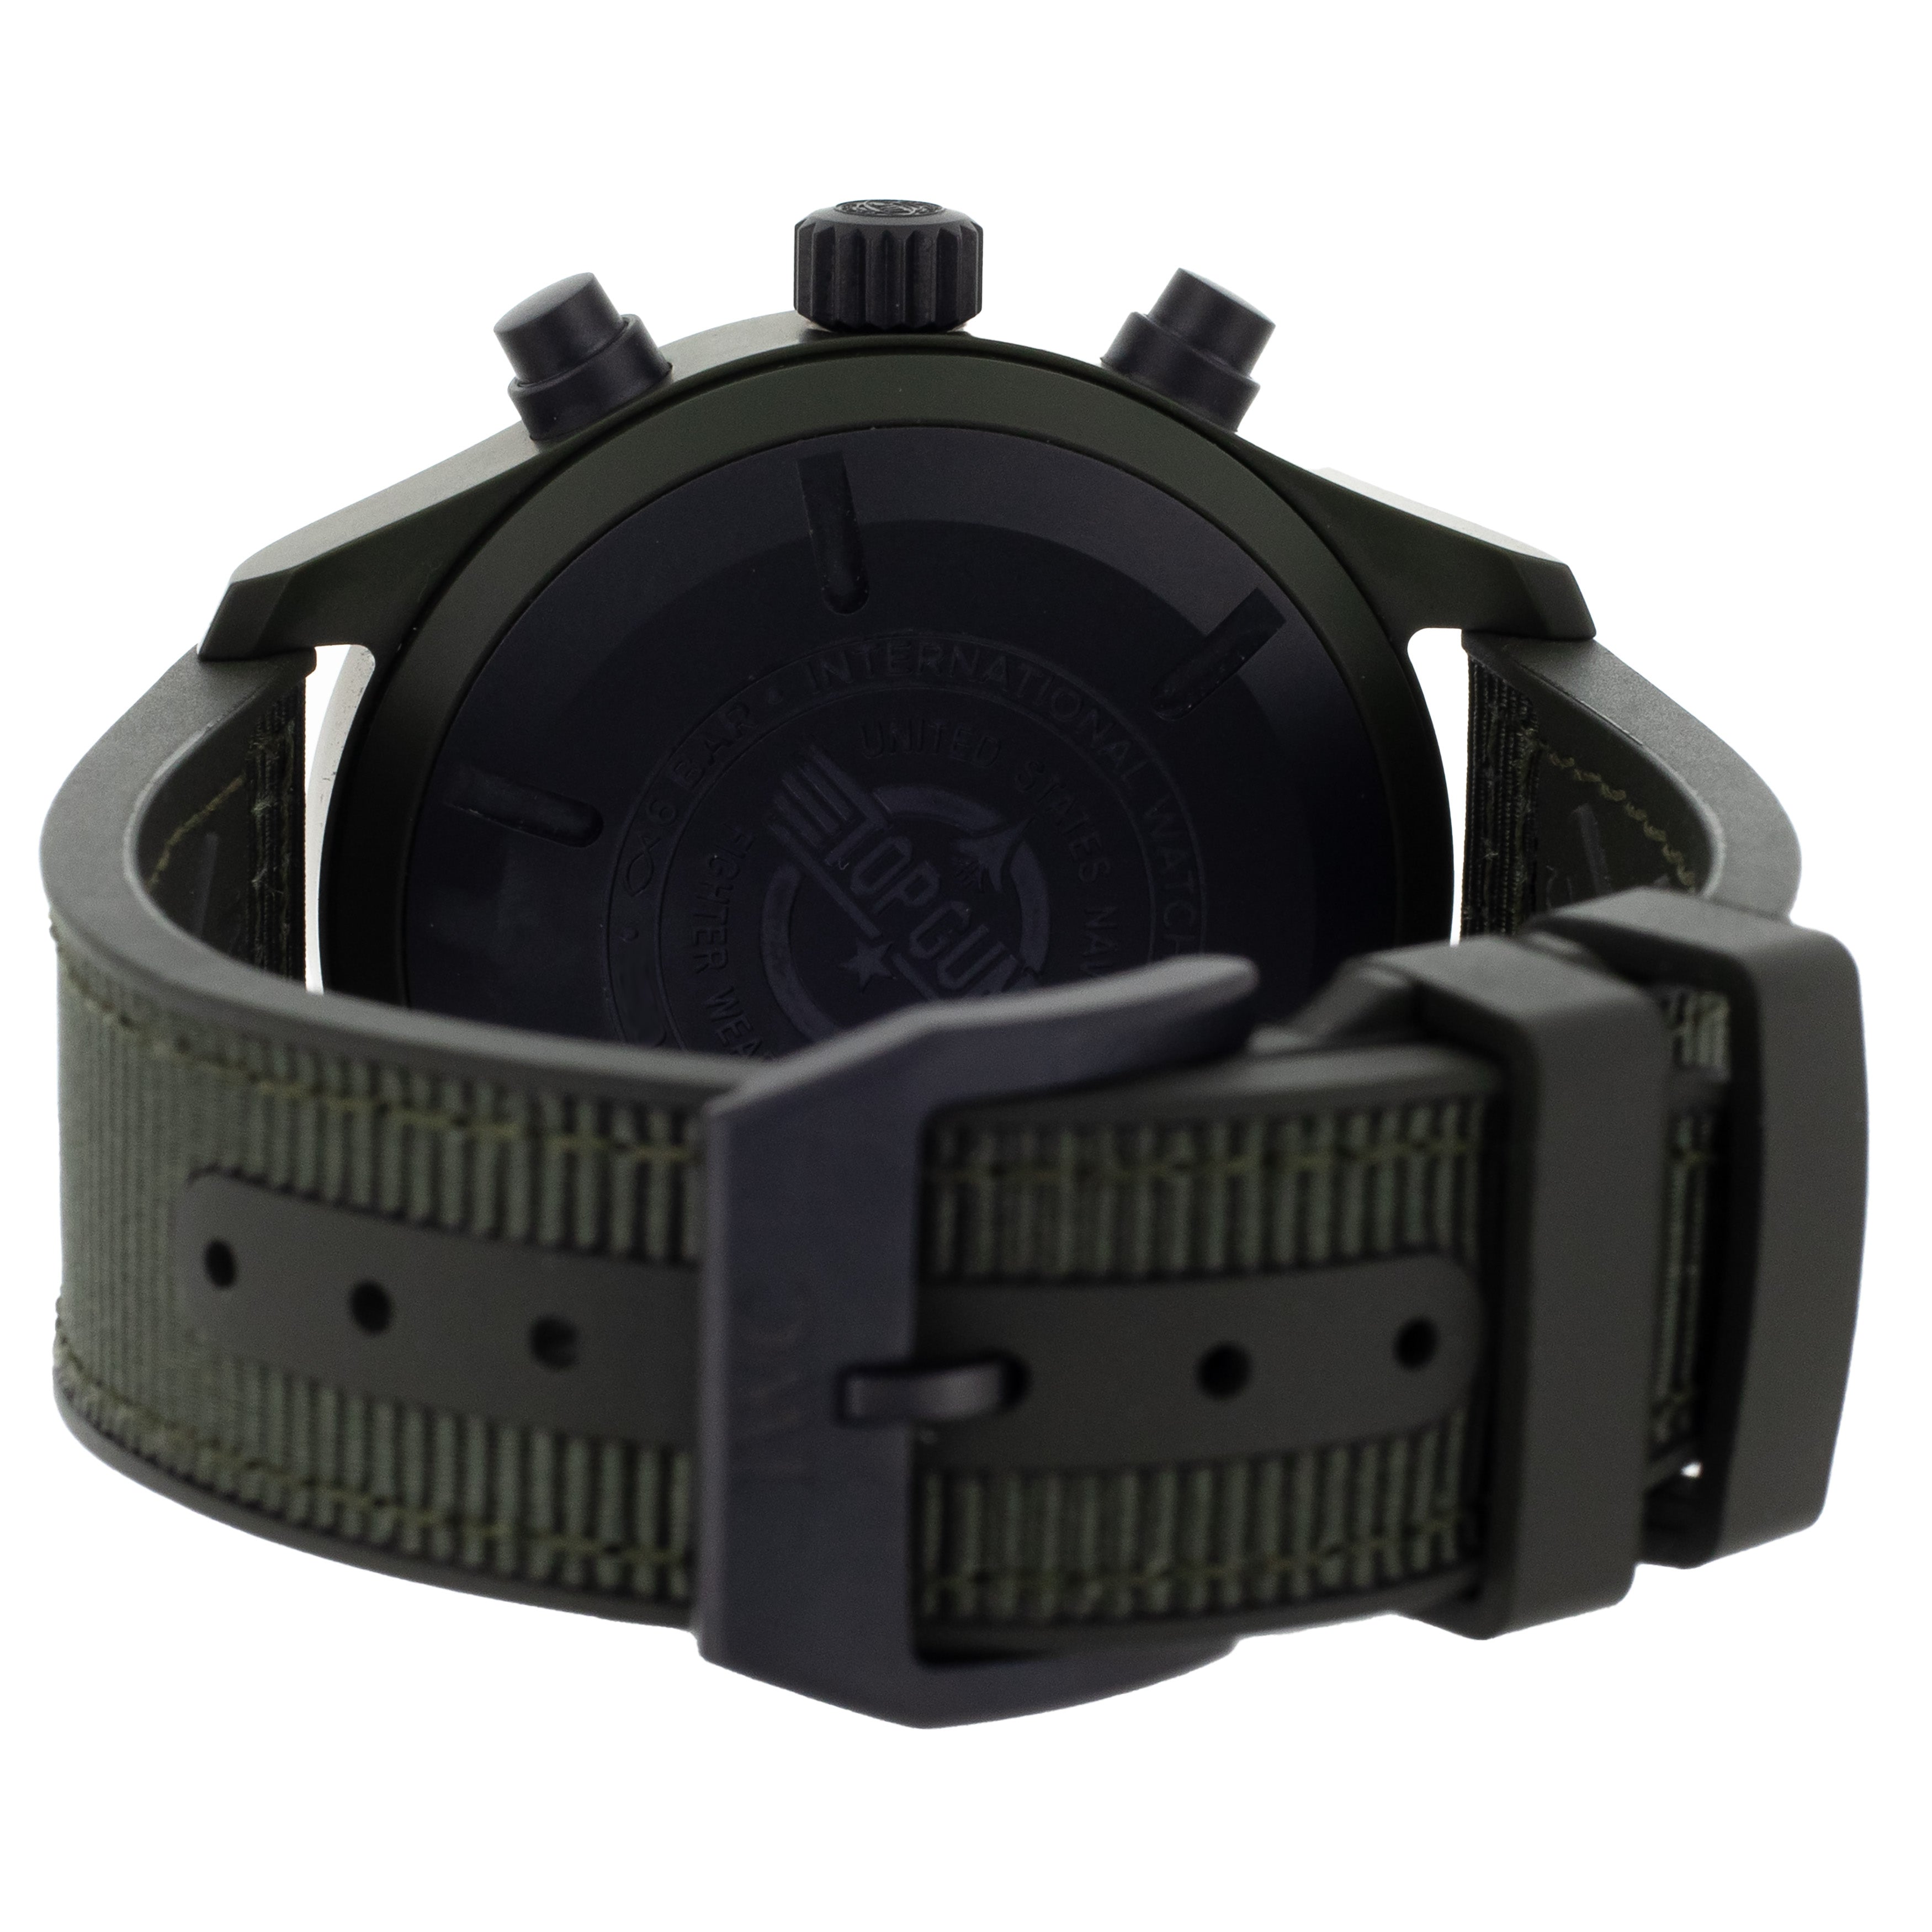 IWC Pilot's Watch Chronograph Top Gun Woodlands Green 44mm IW389106 Full Set